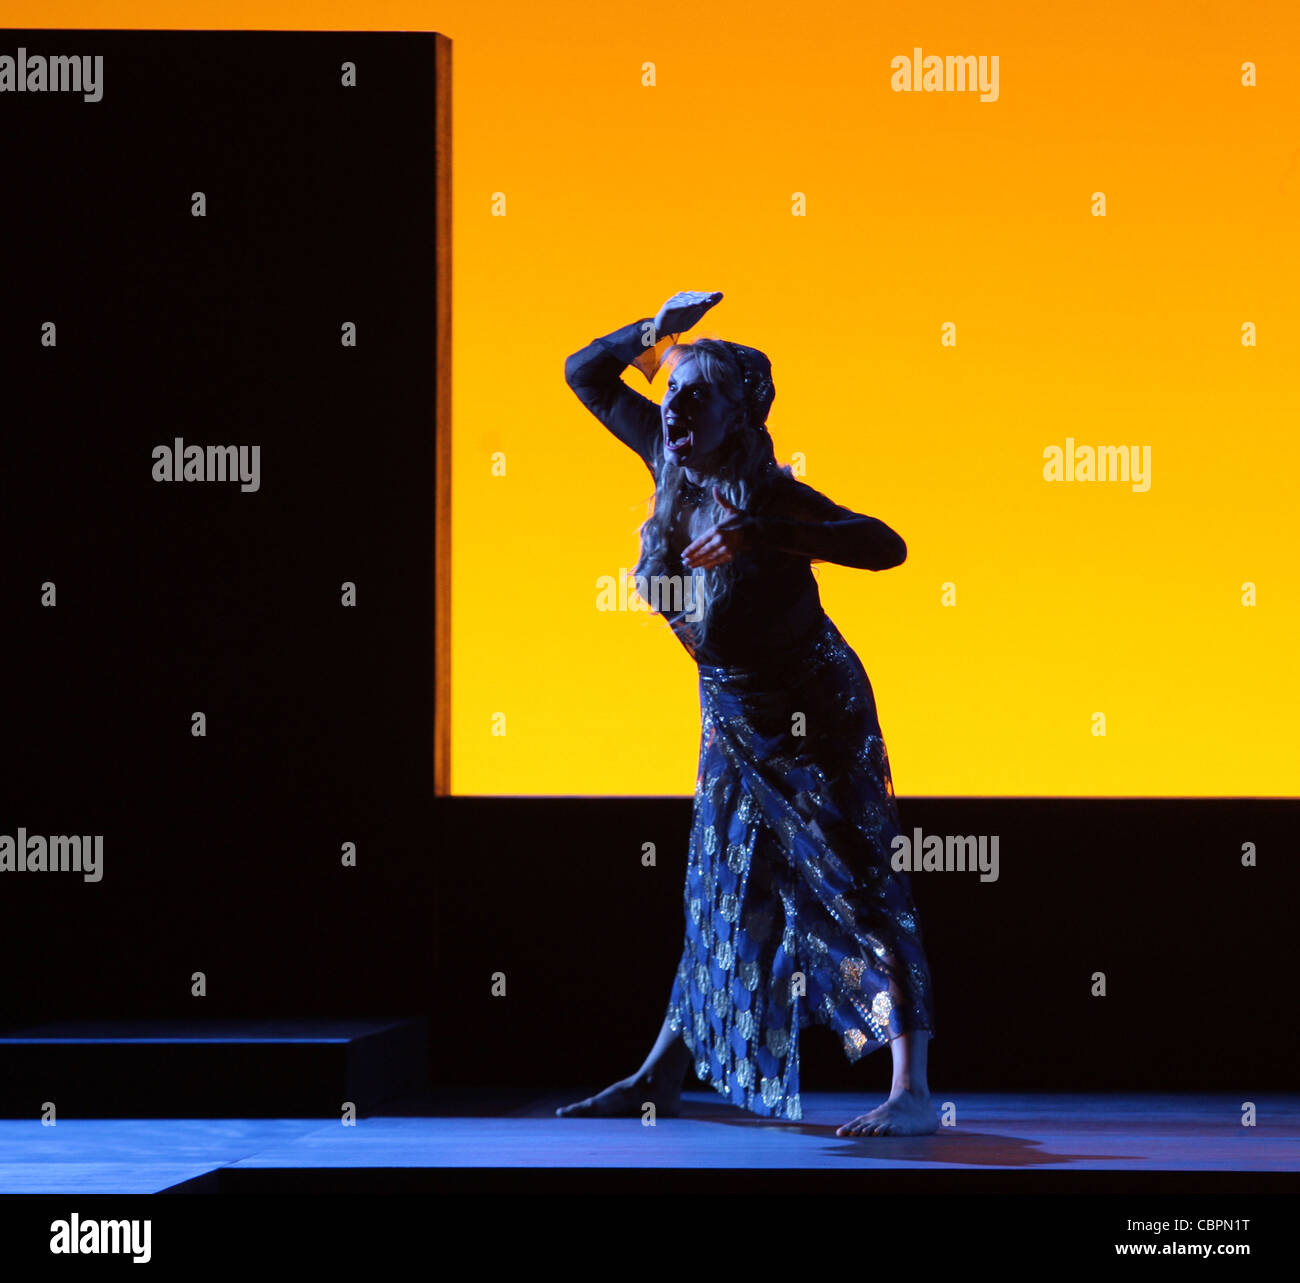 Salomé, Salomé - Drame lyrique en 1 acte- musique de Richard Strauss, de l'Oscar Wilde roman- direction musicale : Alain ALTINO Banque D'Images